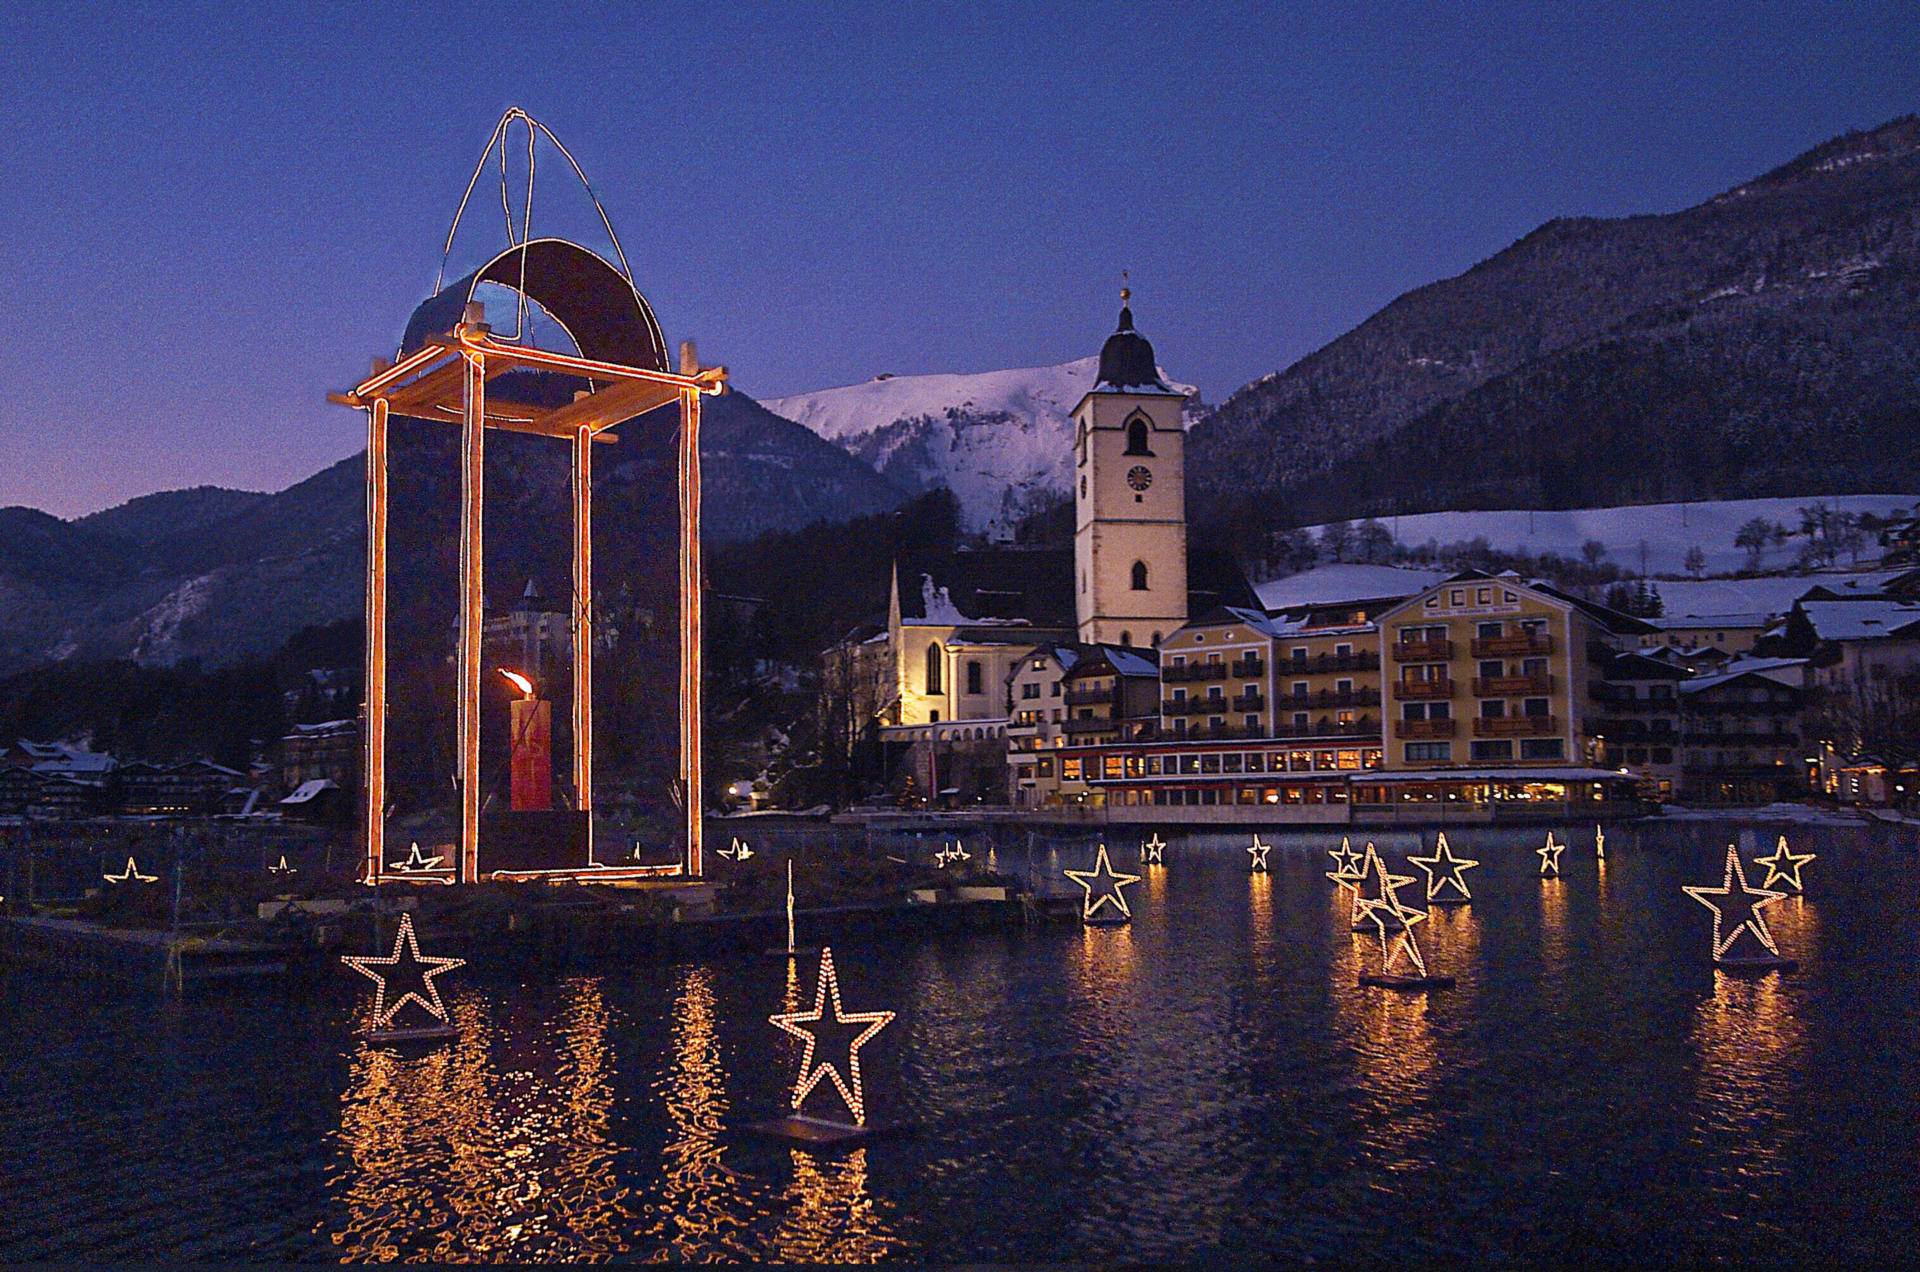 Das Christkind erwartend besuchen wir drei der schönsten Weihnachtsmärkte des Alpenraums. St.Wolfgang, das mit seiner stimmungsvollen Atmosphäre und ideenreichen Dekoration bereits mehrmals zum schönsten Adventmarkt Österreichs gekürt wurde.